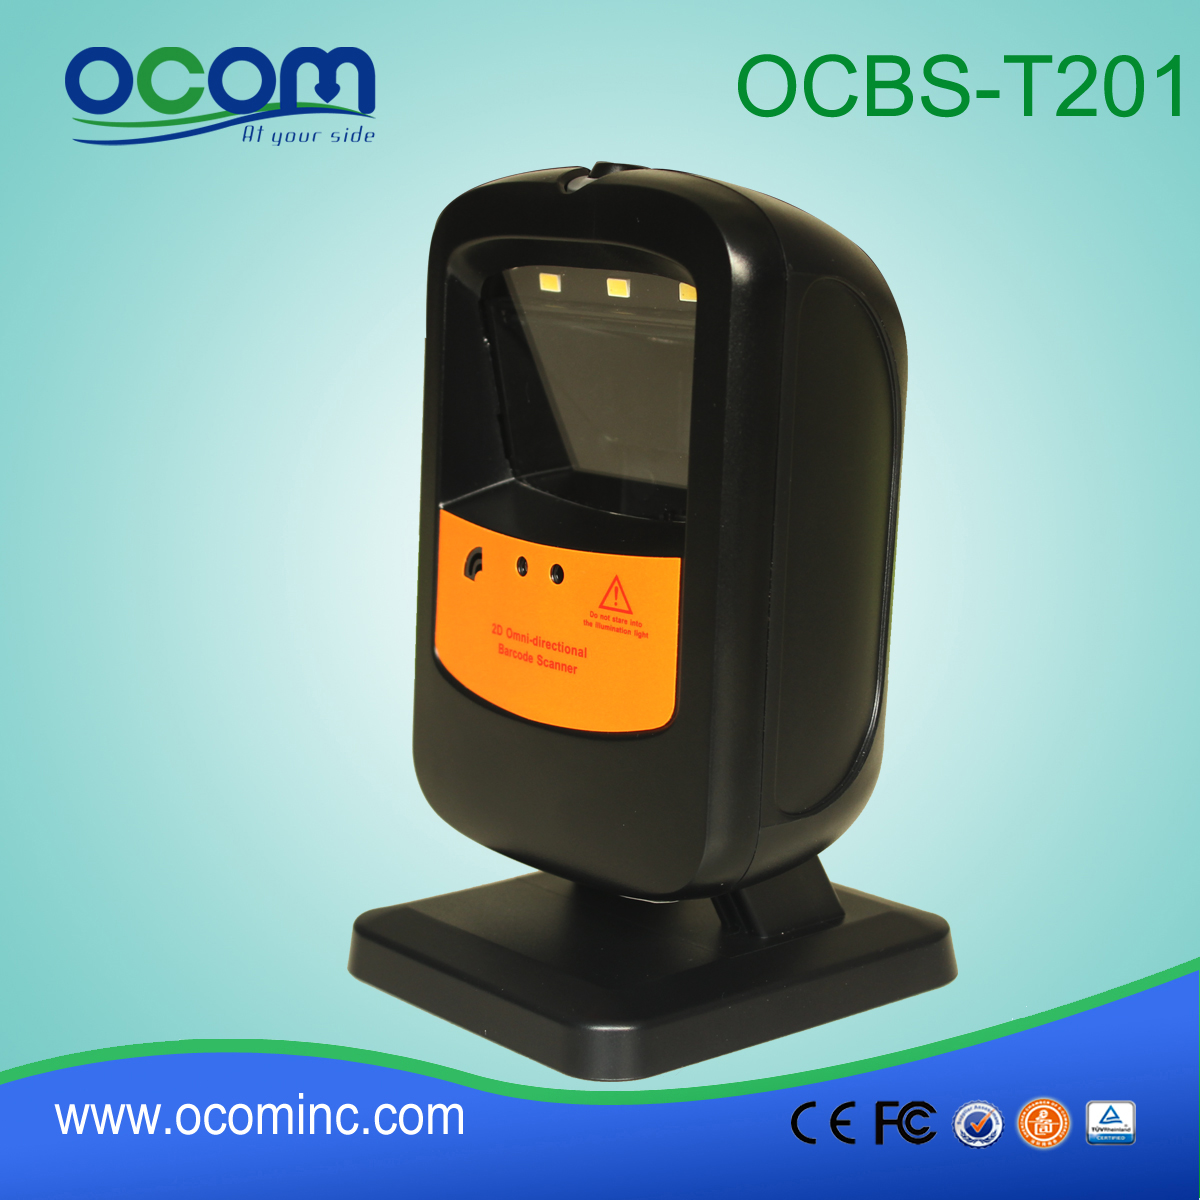 сканер штрих-кодов 2D Omini Auto чувство, Ominidirectional сканер штрих-кодов (OCBS-T201)